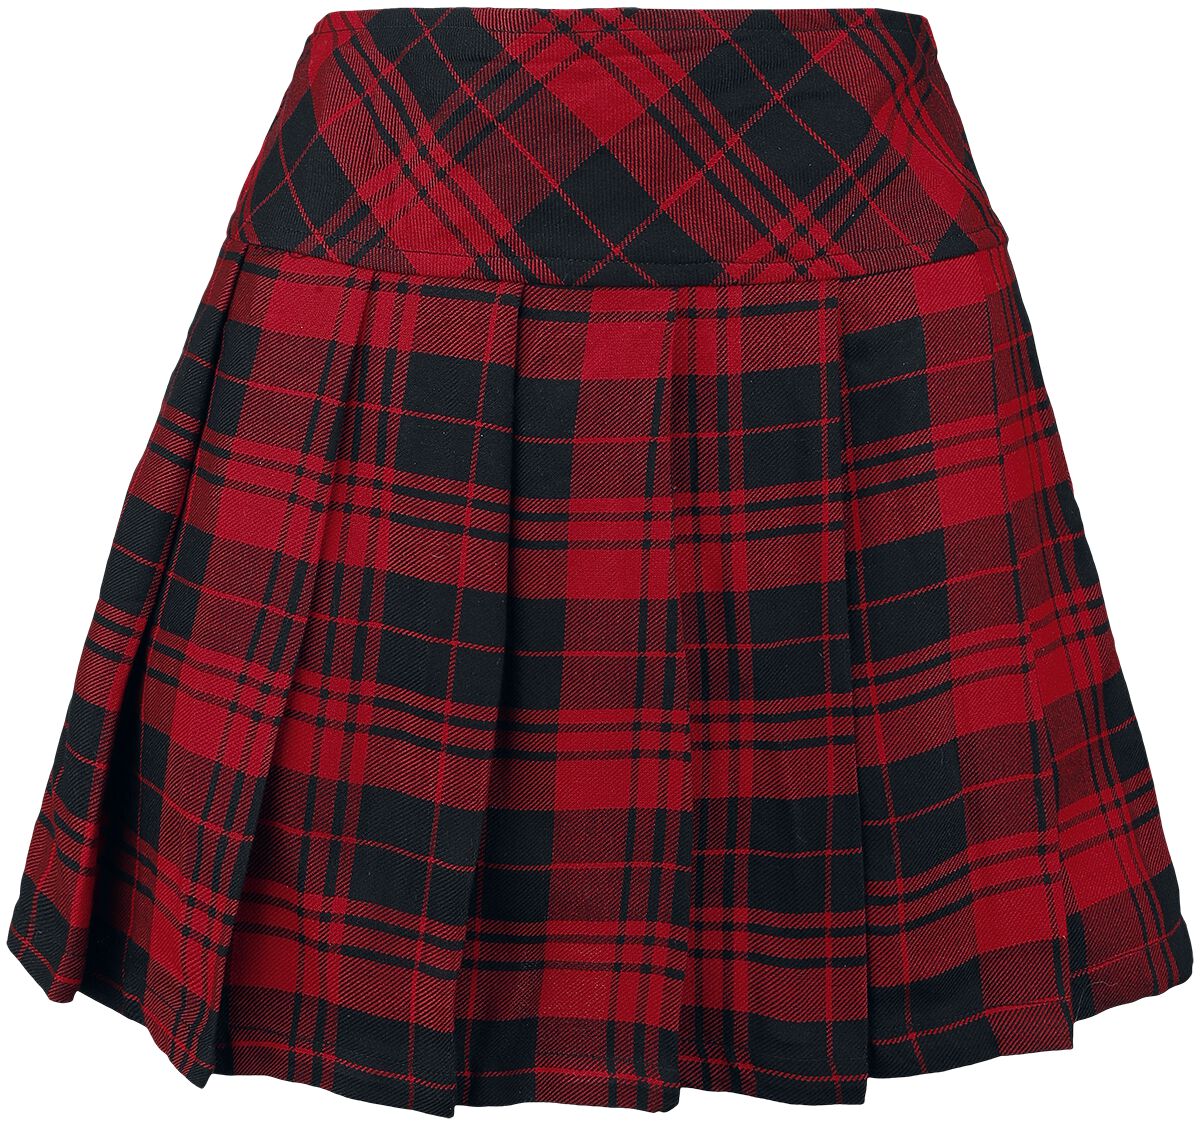 Heartless Zorya Skirt Kurzer Rock rot schwarz in XL